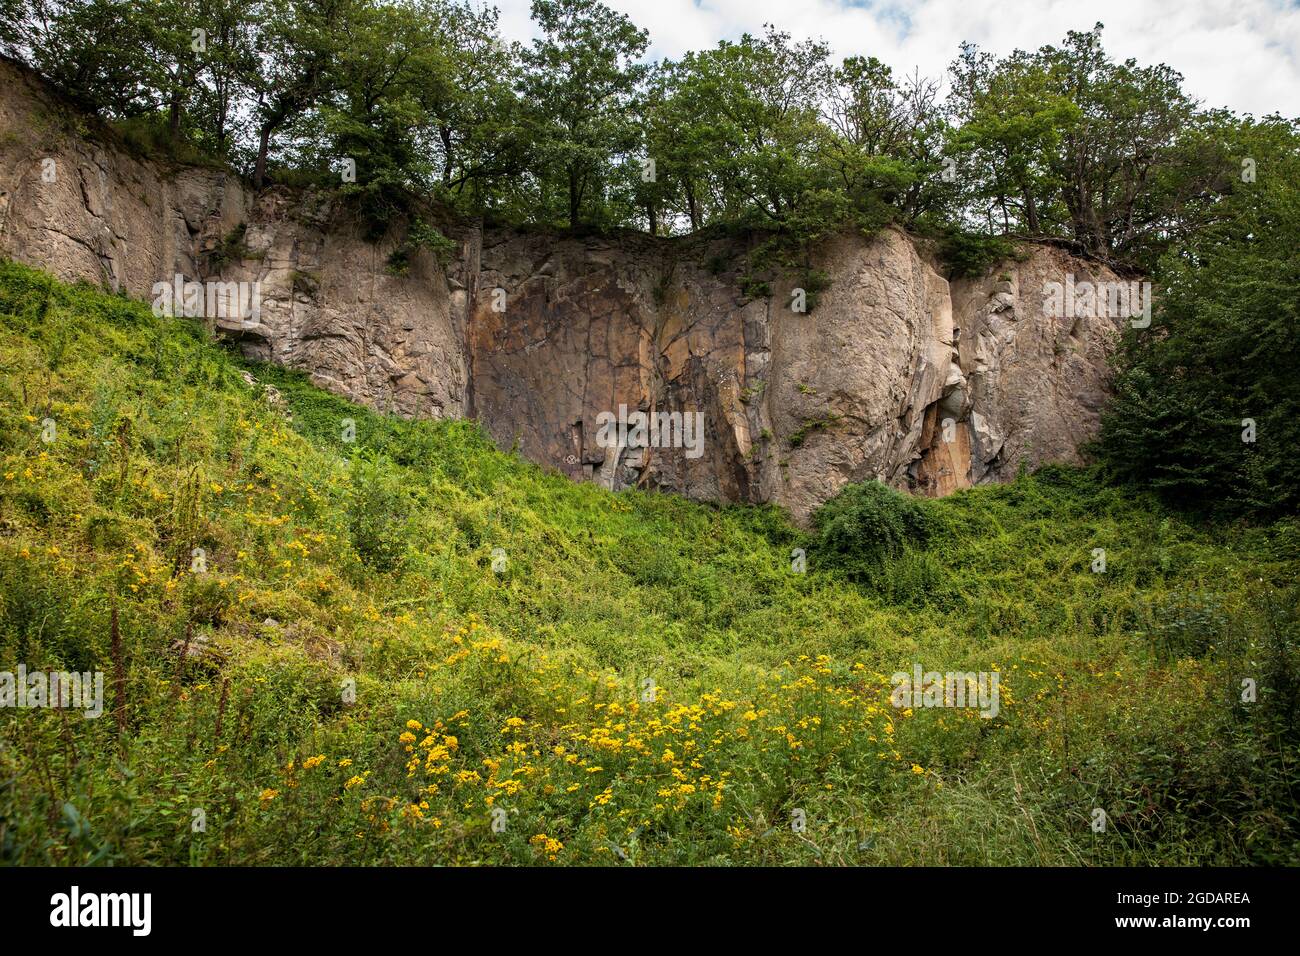 Mur de roche de la montagne Stenzelberg dans la chaîne de colline de Siebengebirge près de Koenigswinter, la montagne a servi de carrière pour la latite de quartz jusqu'à la Banque D'Images